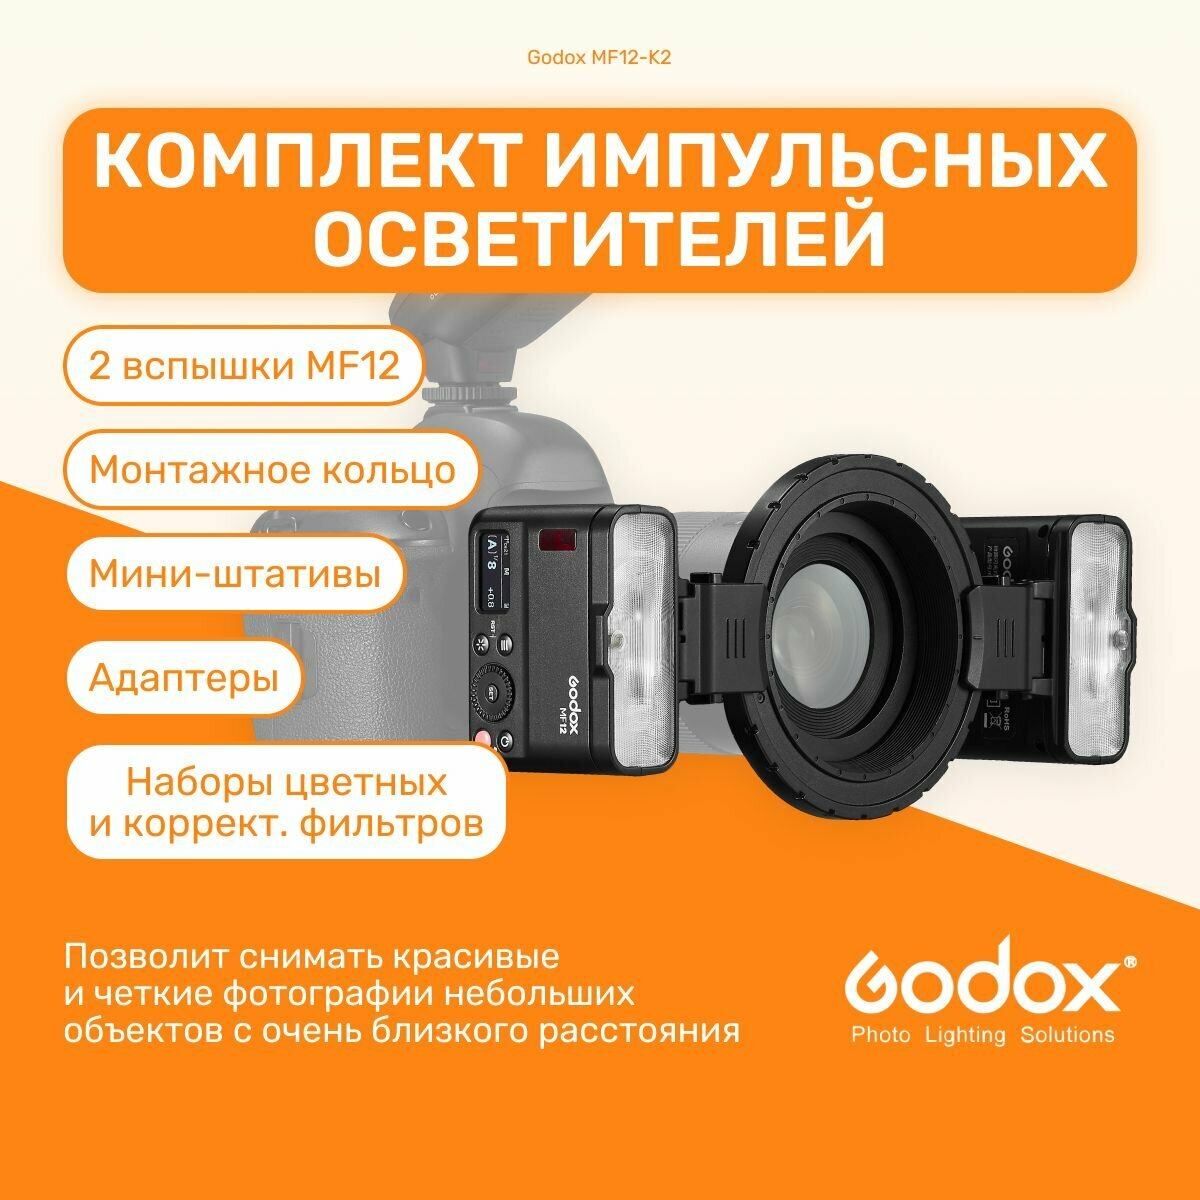 Комплект импульсных осветителей Godox MF12-K2 для макросъемки, импульсный студийный свет для съемки фото, фотостудии